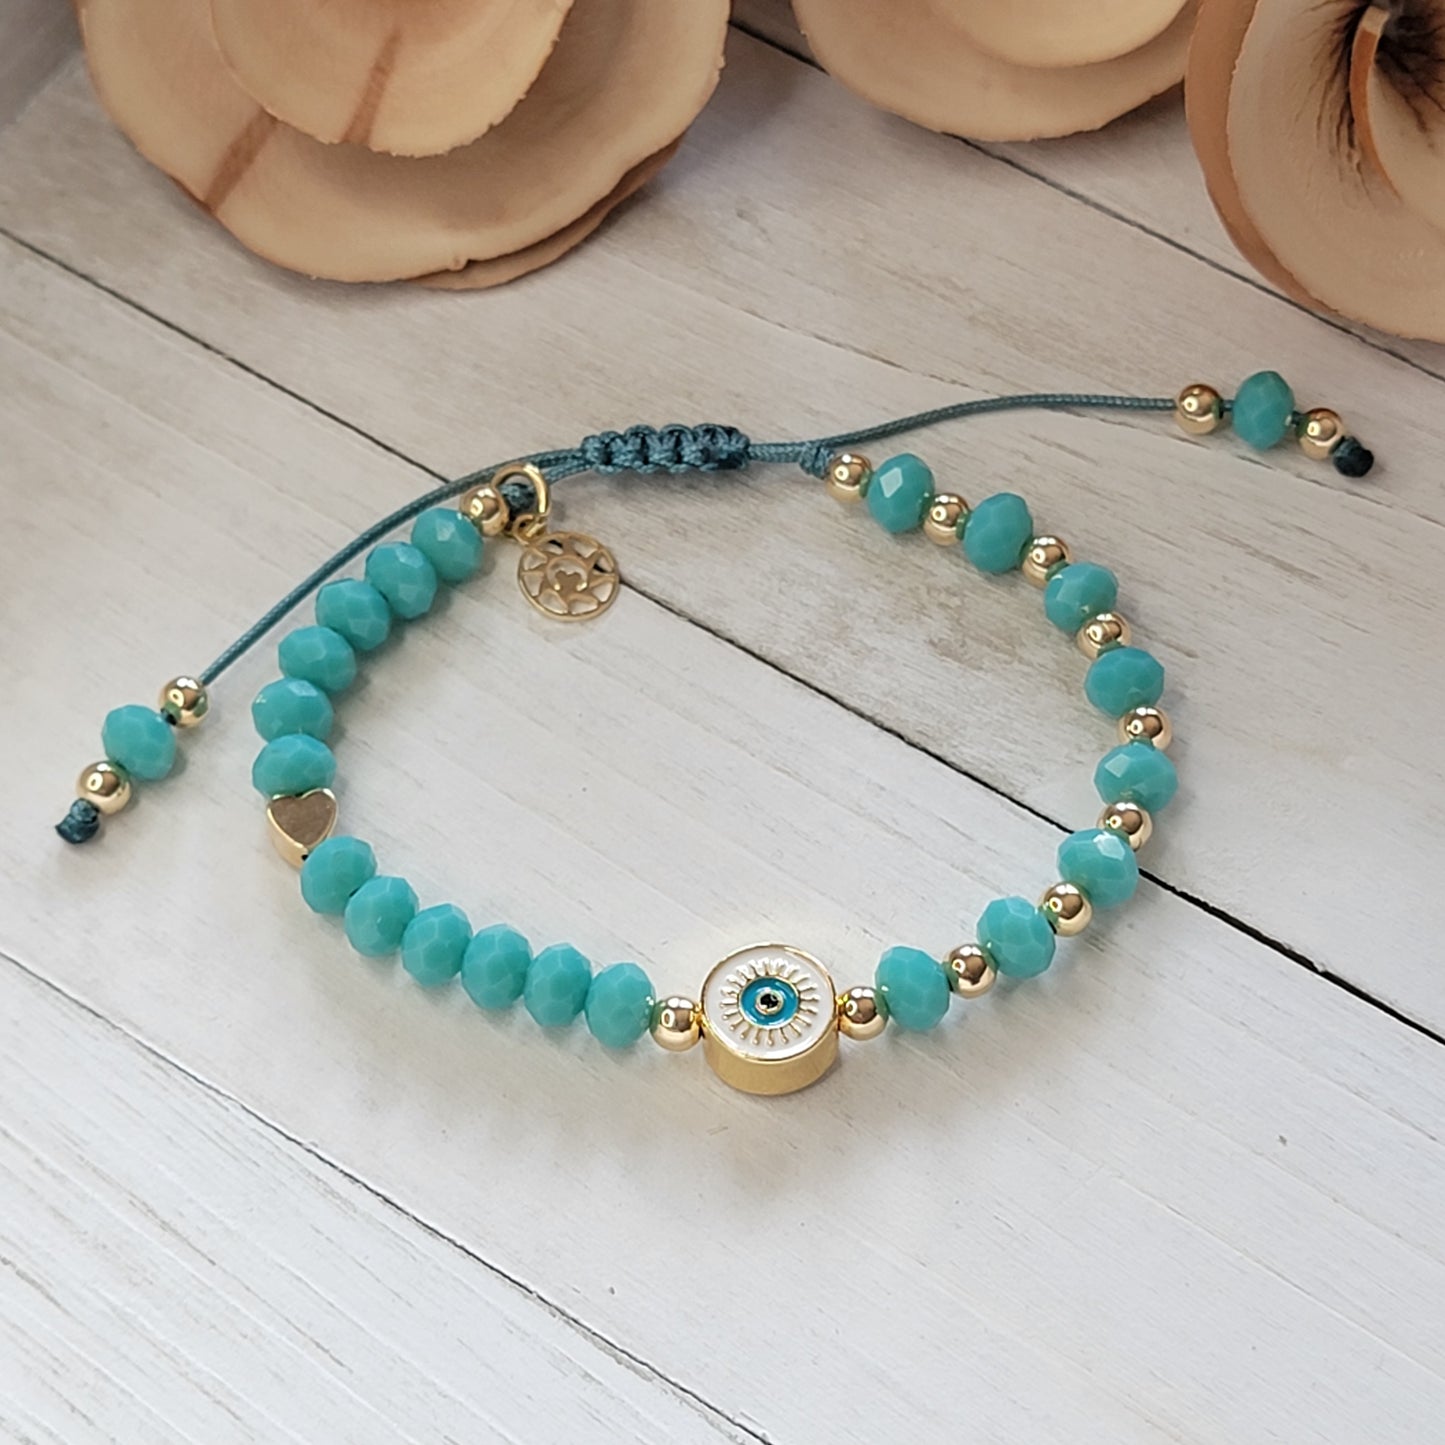 Elegant Protection Bracelet with Turquoise Crystals & 18k Gold-Filled Details